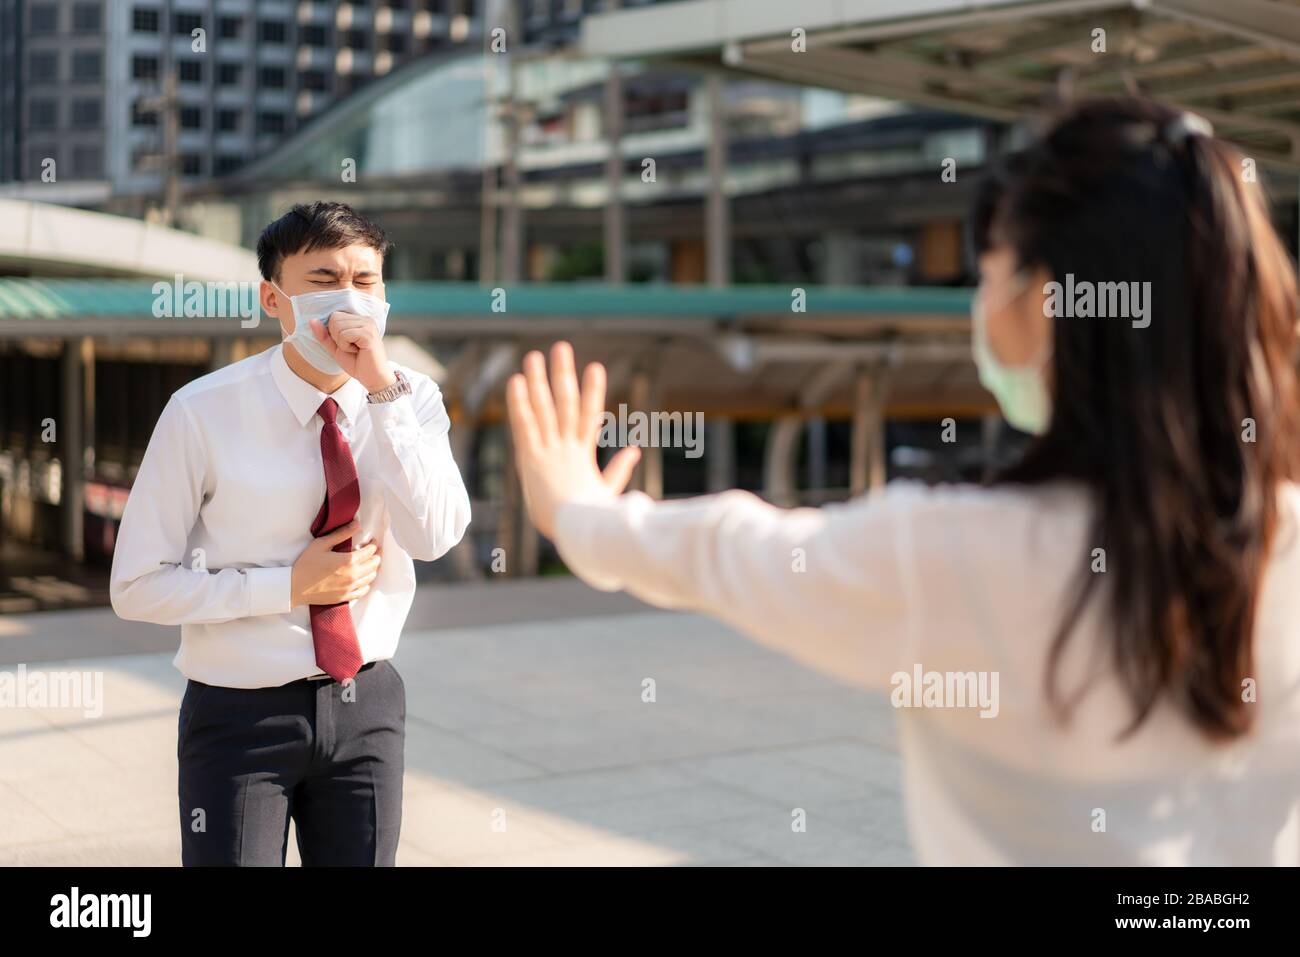 Un homme d'affaires asiatique malade tousse avec masque et une femme d'affaires stop signe lui main pour garder la distance de protection contre les virus COVID-19 et les personnes social distancing Banque D'Images